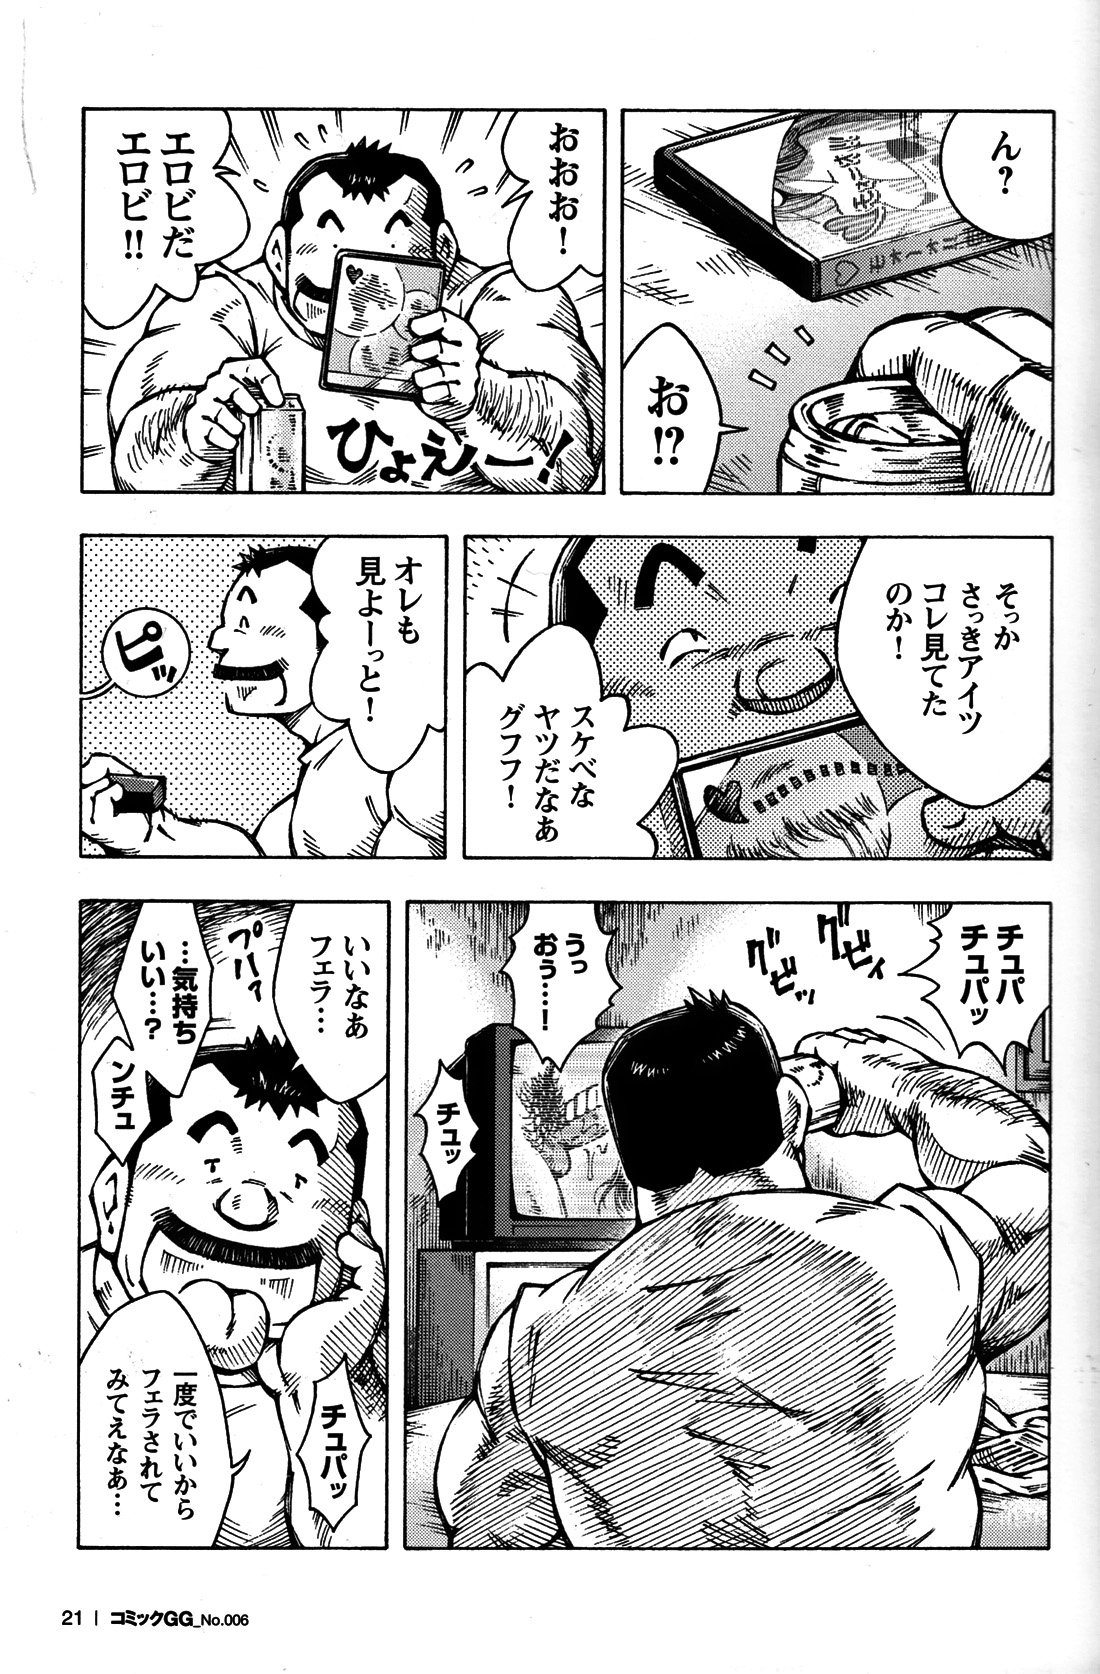 Comic G-men Gaho No. 06 Nikutai Roudousha page 20 full